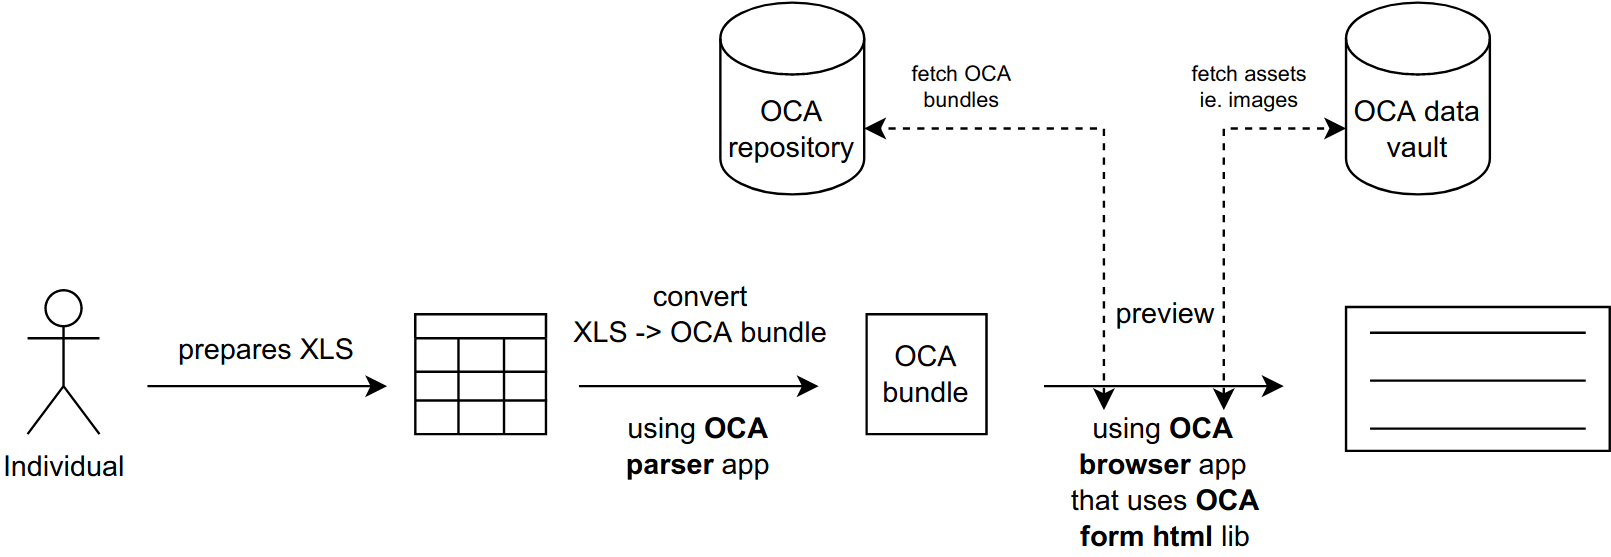 Create OCA bundle